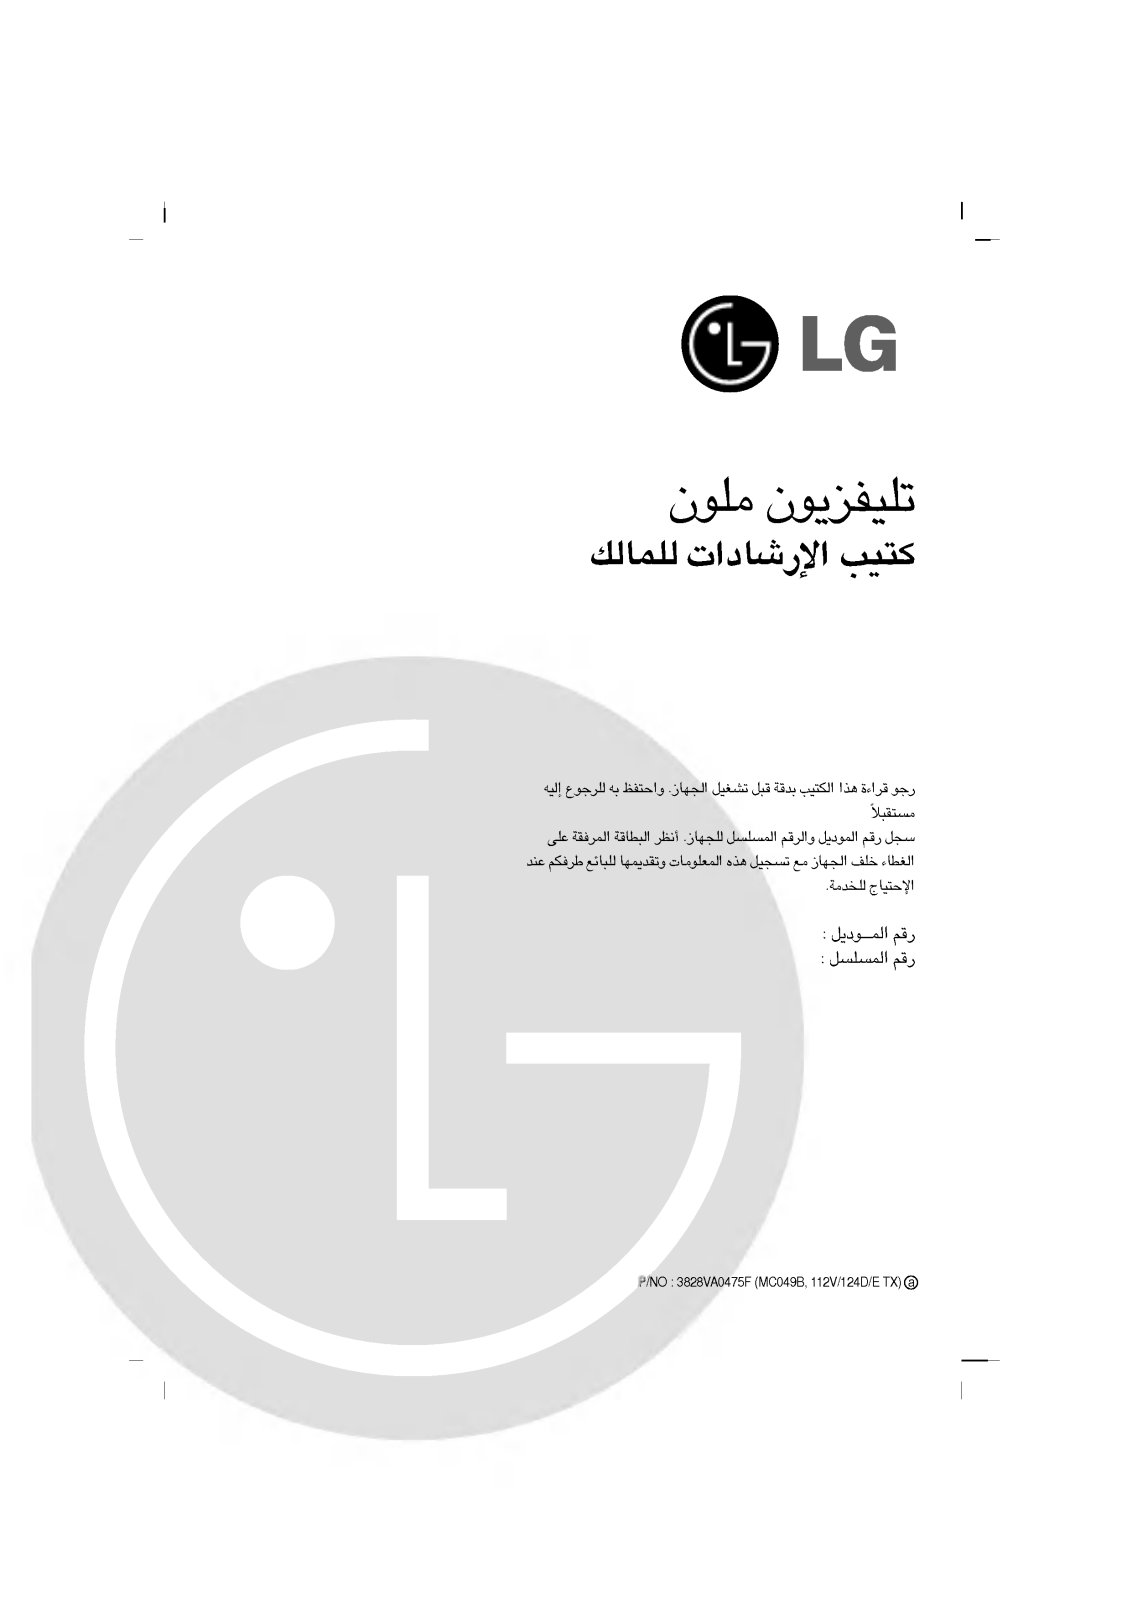 LG RT-21CC25V Owner’s Manual